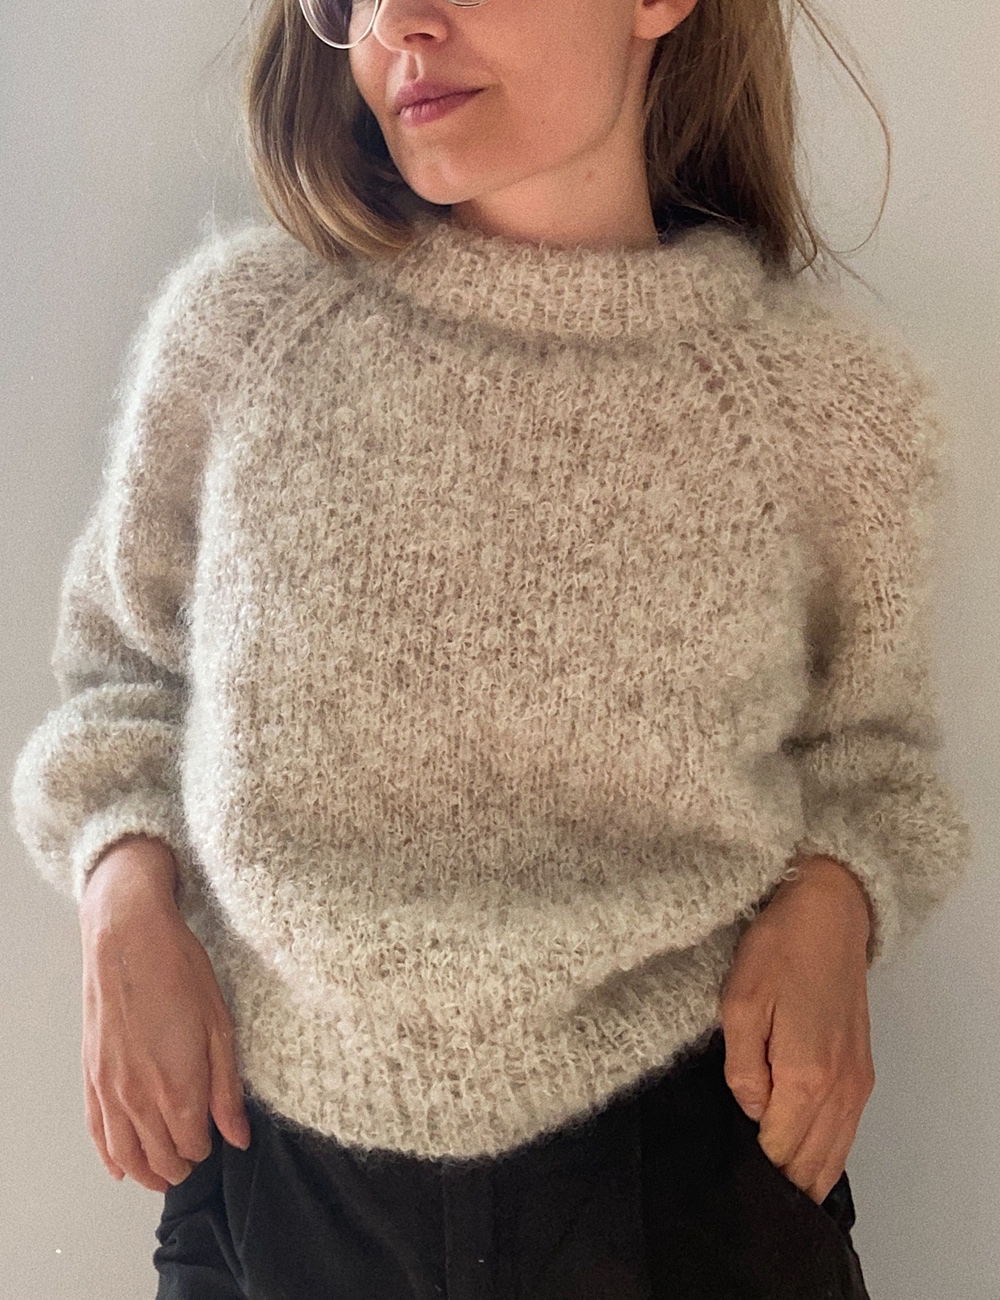 Bouclé Sweater - Le Knit - (DK)